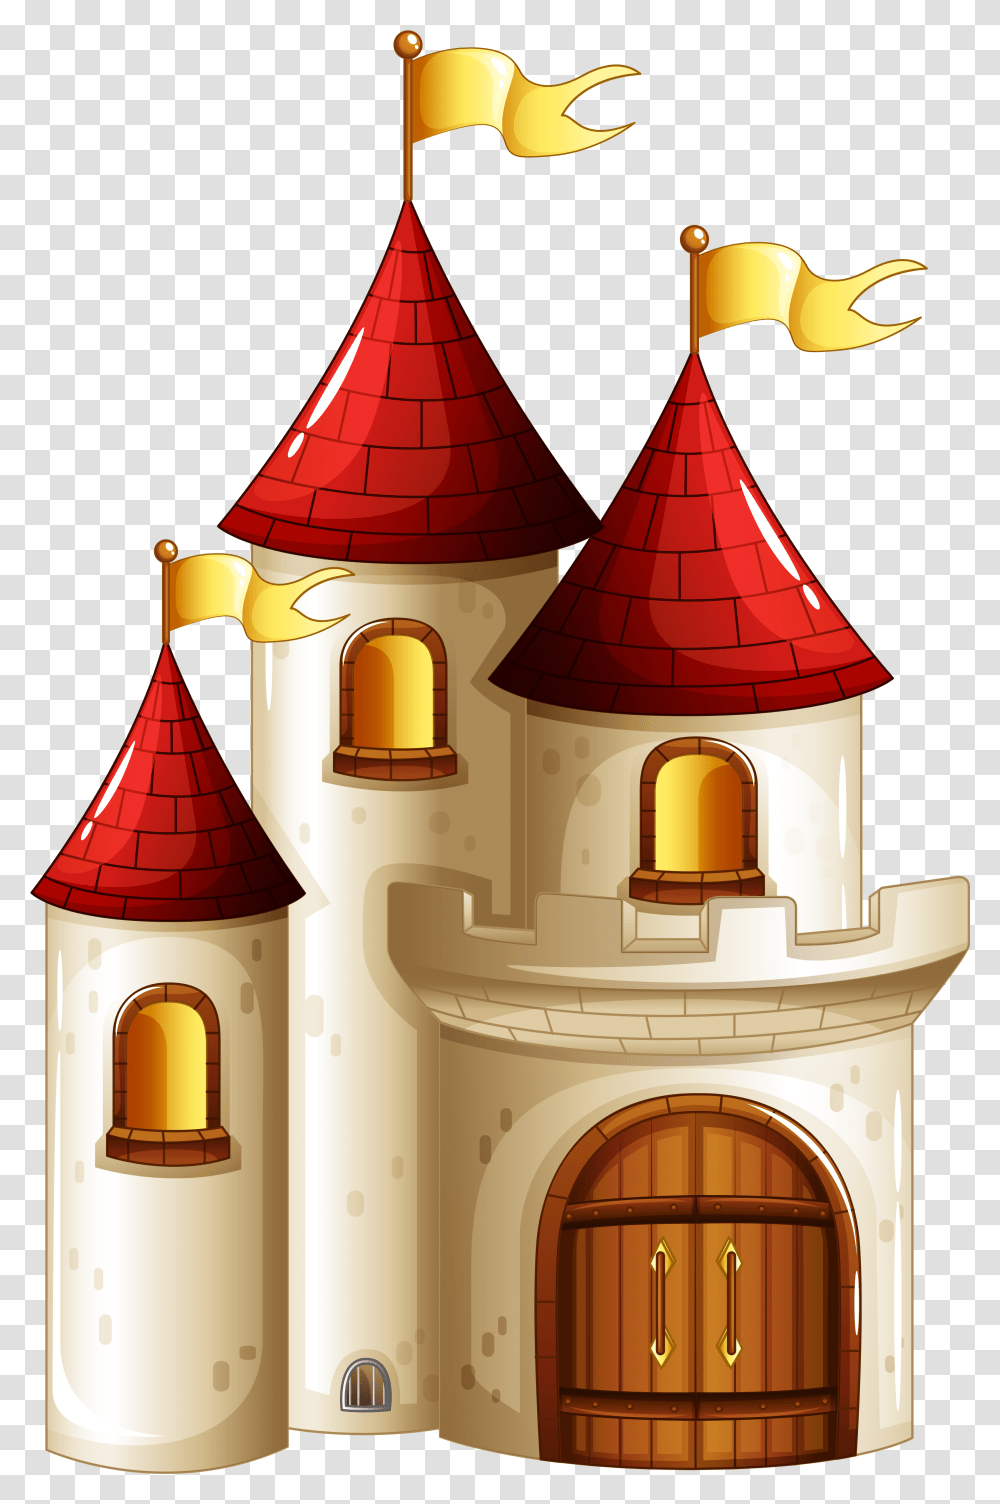 Castle Clip Art, Lamp, Tower, Architecture, Building Transparent Png